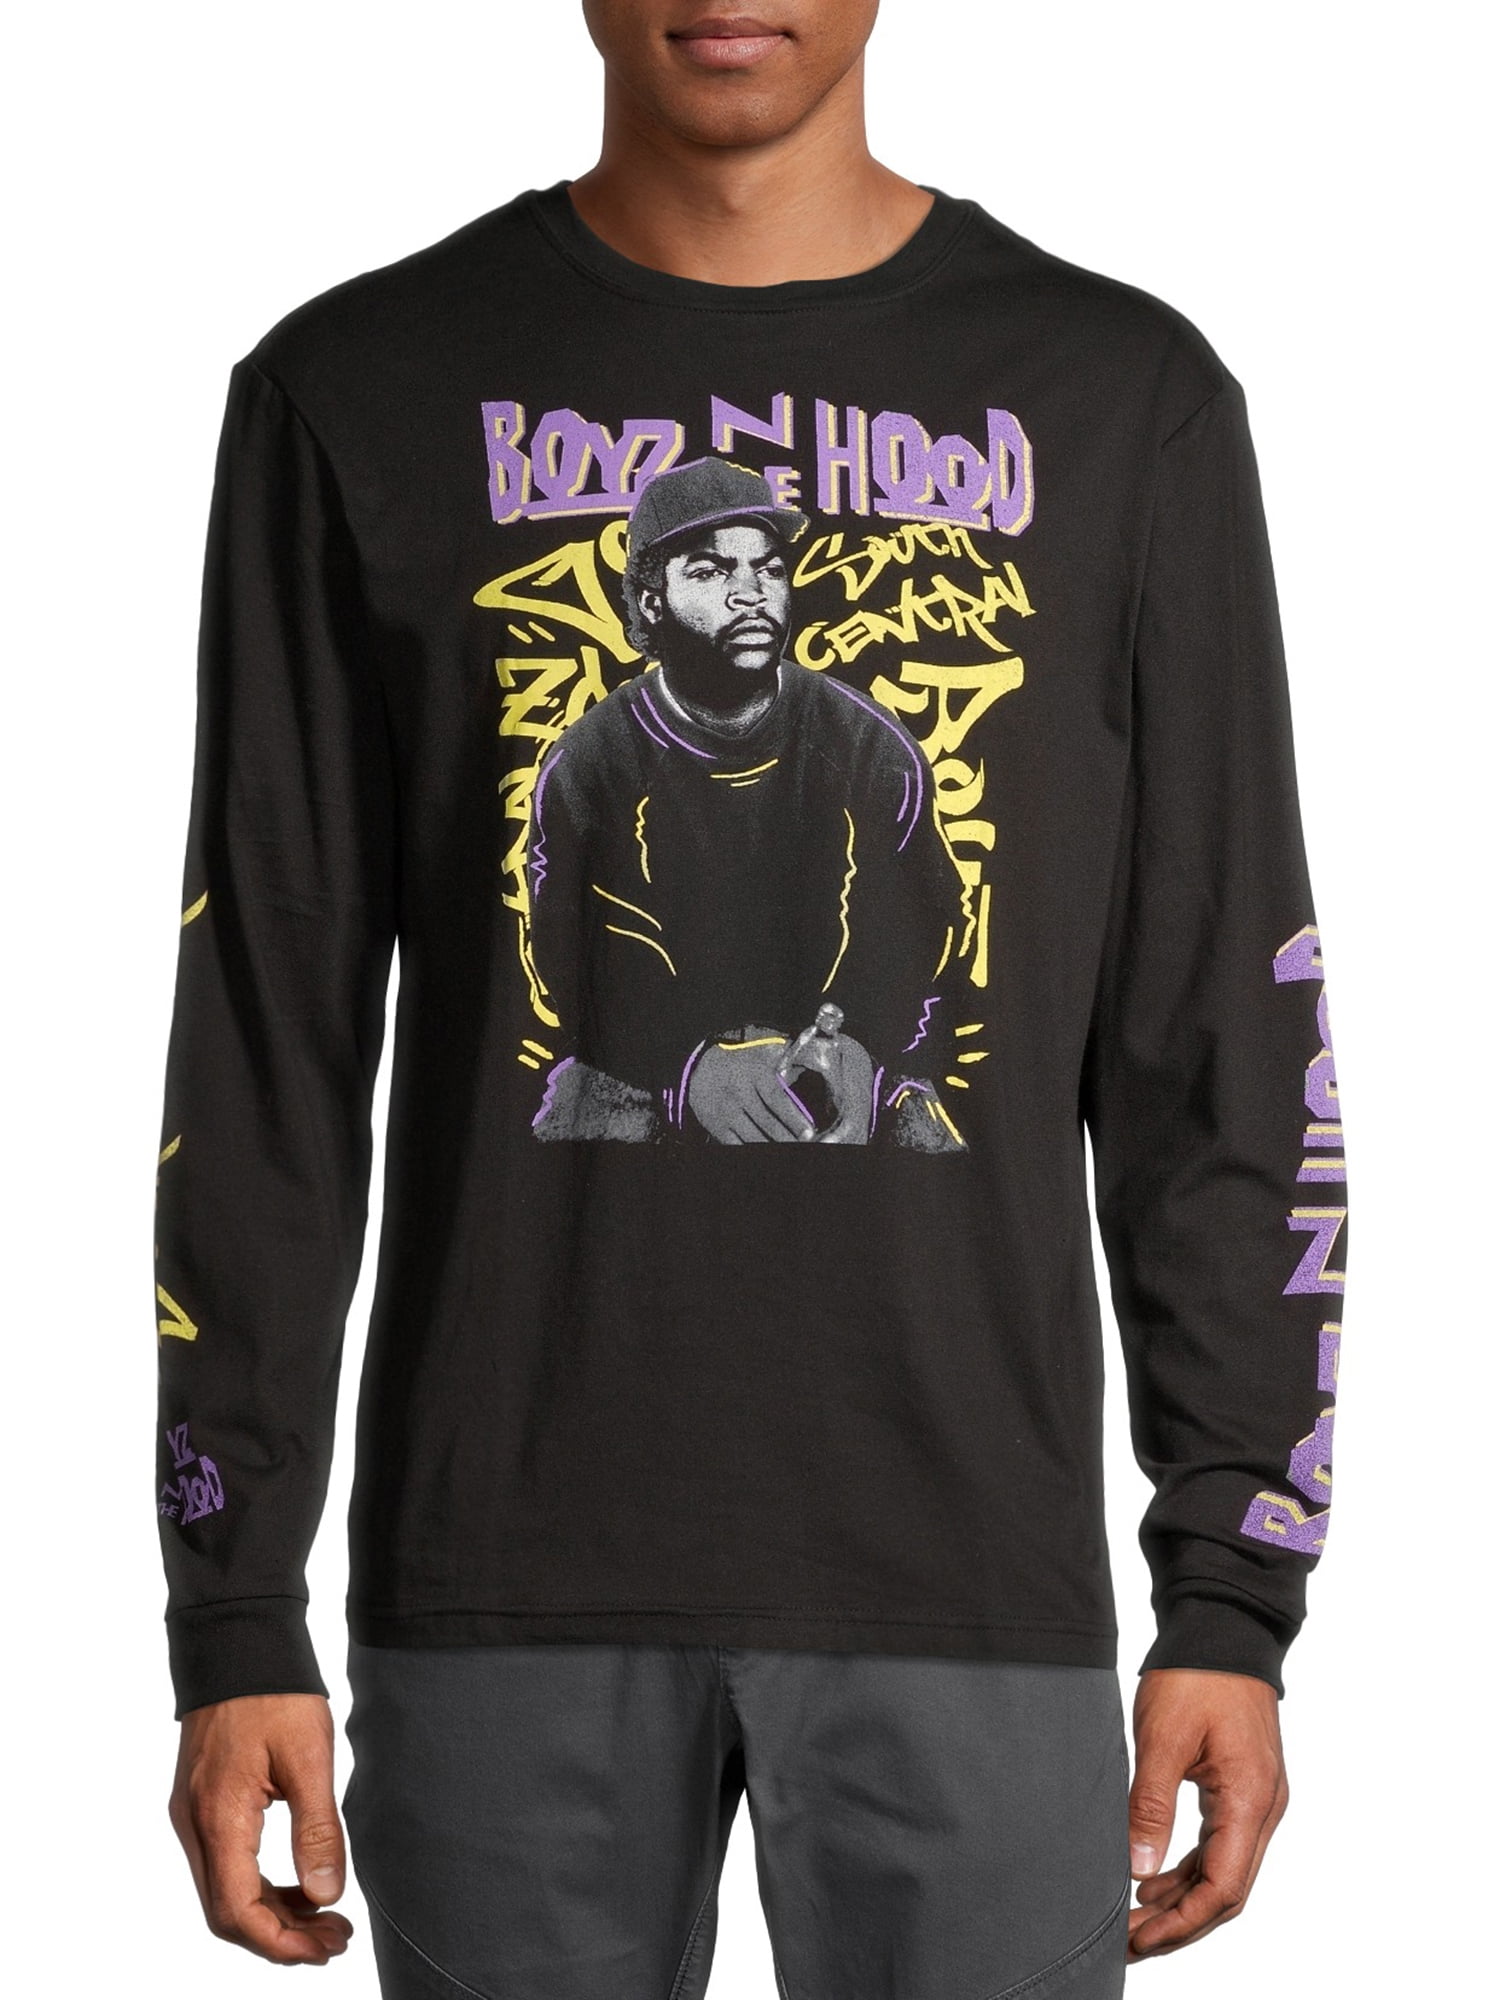 boyz n the hood shirts